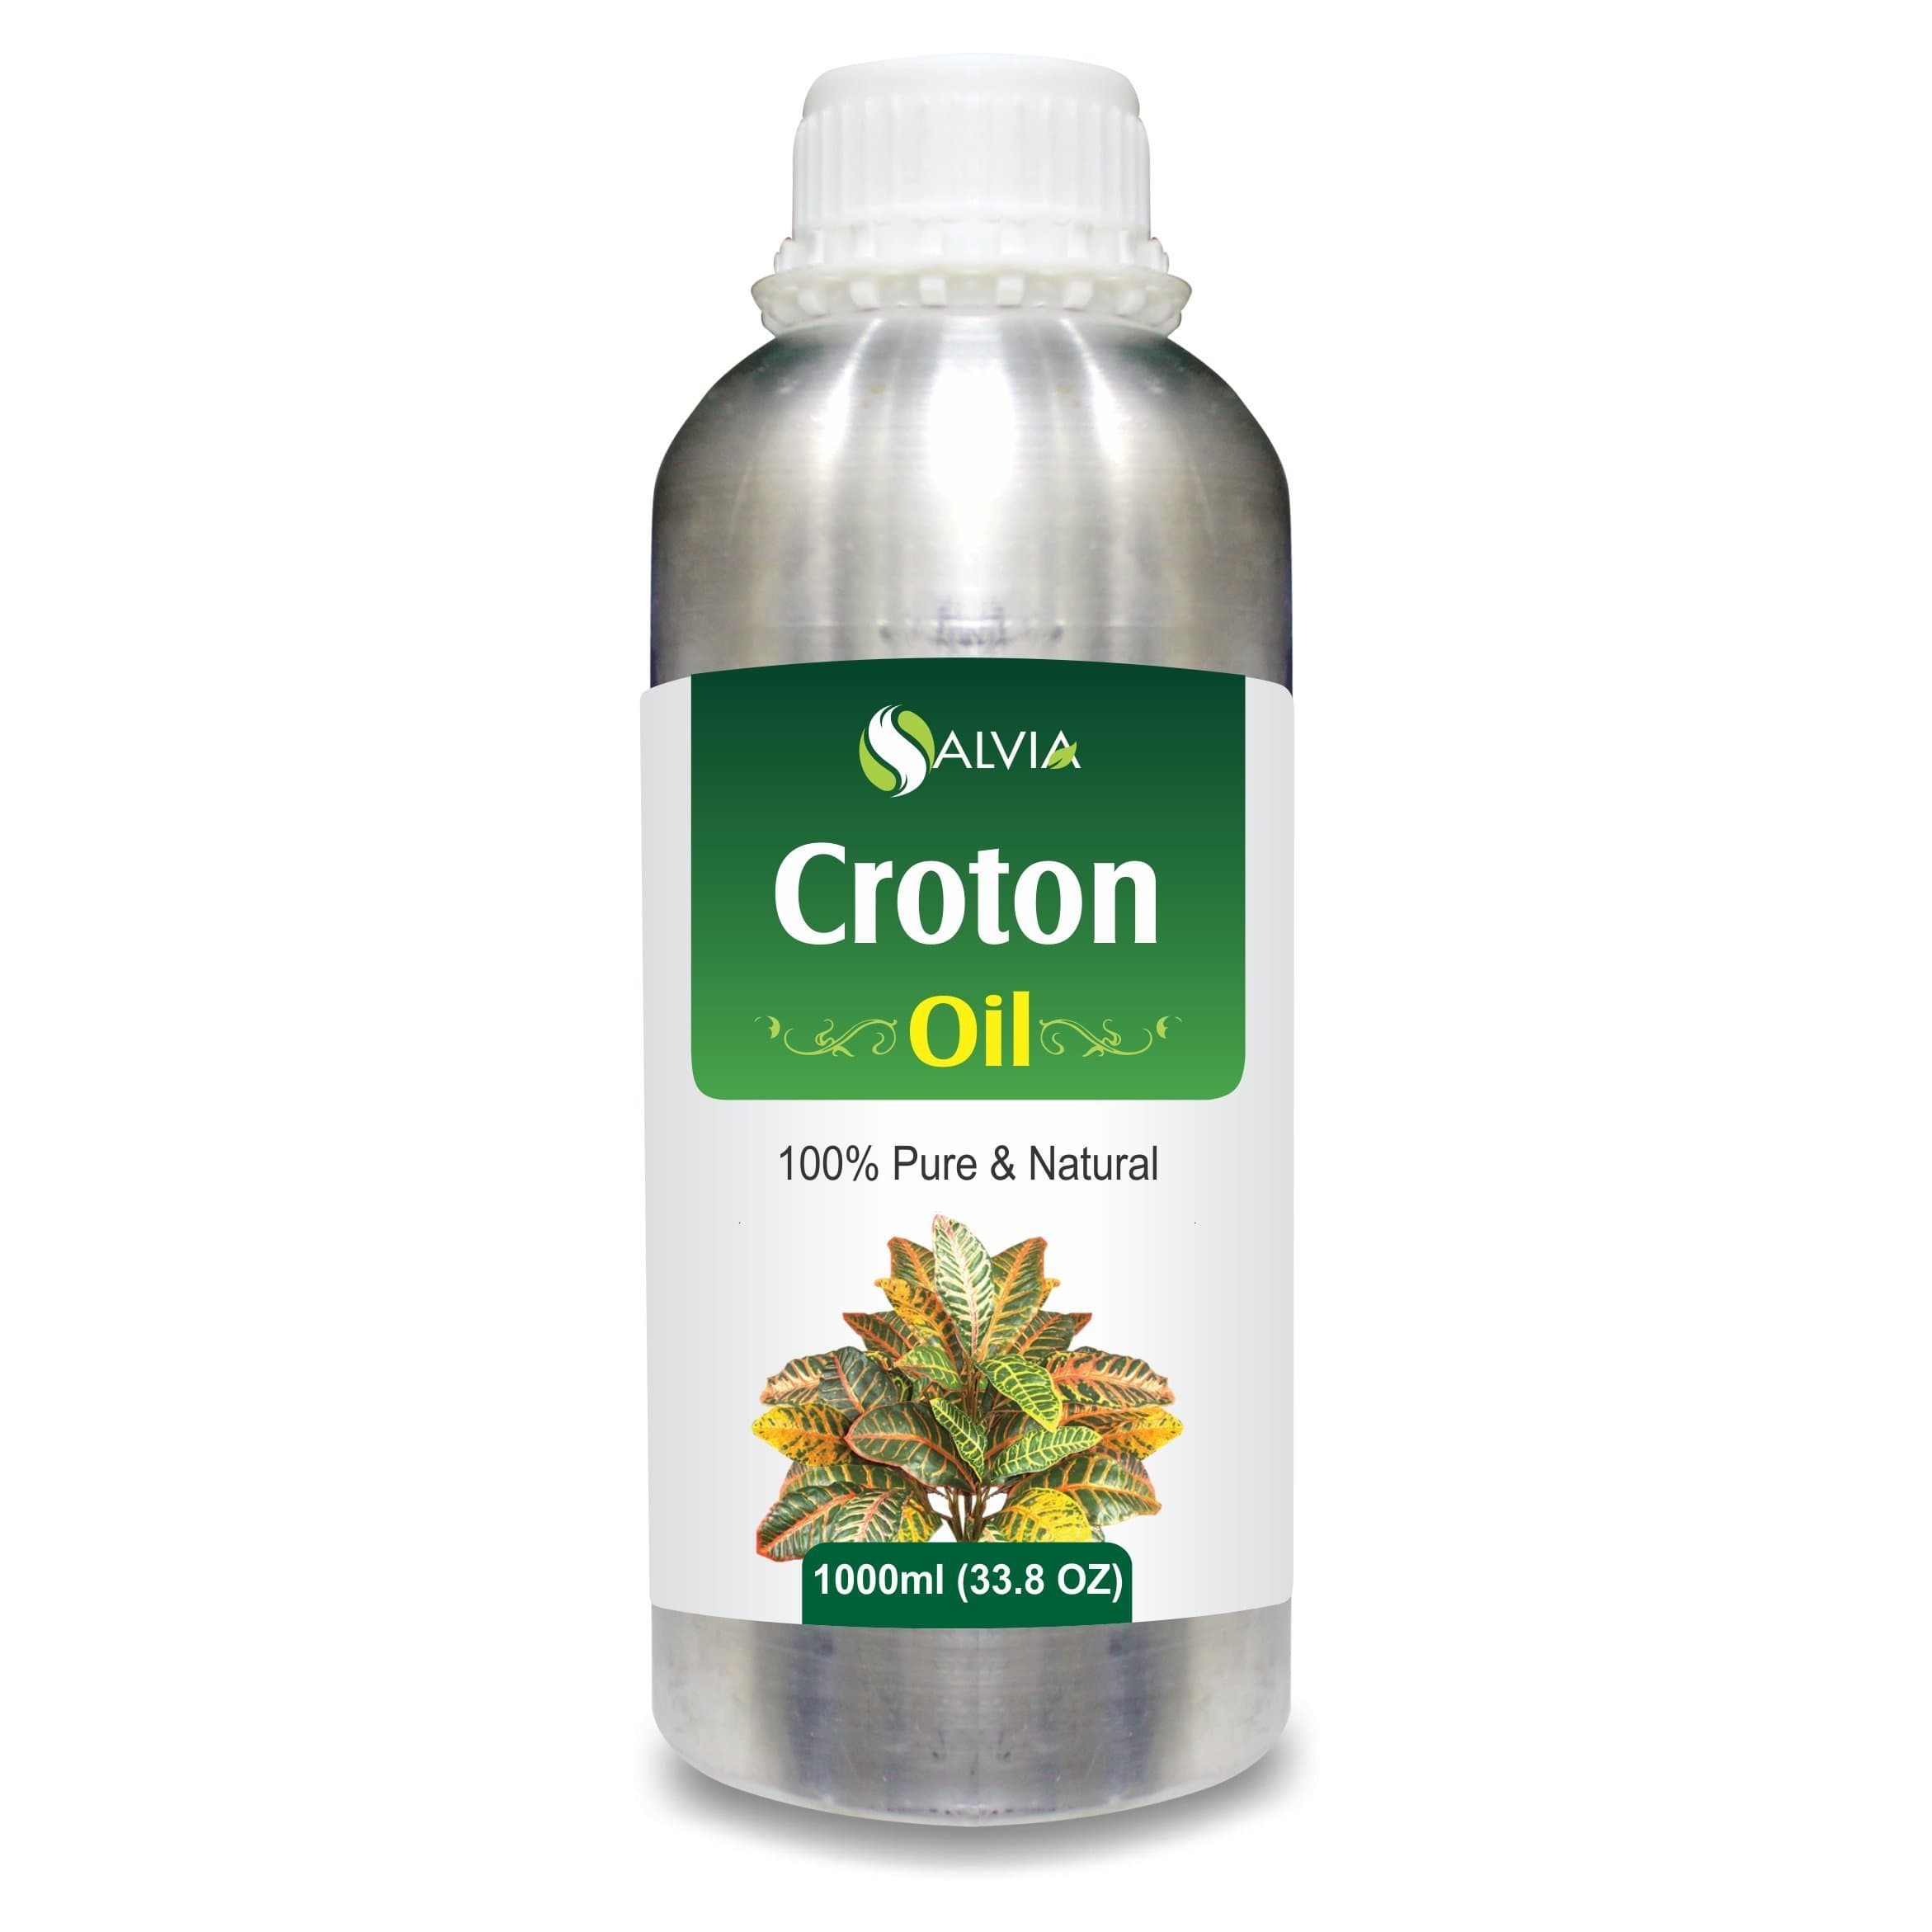 croton oil in hindi